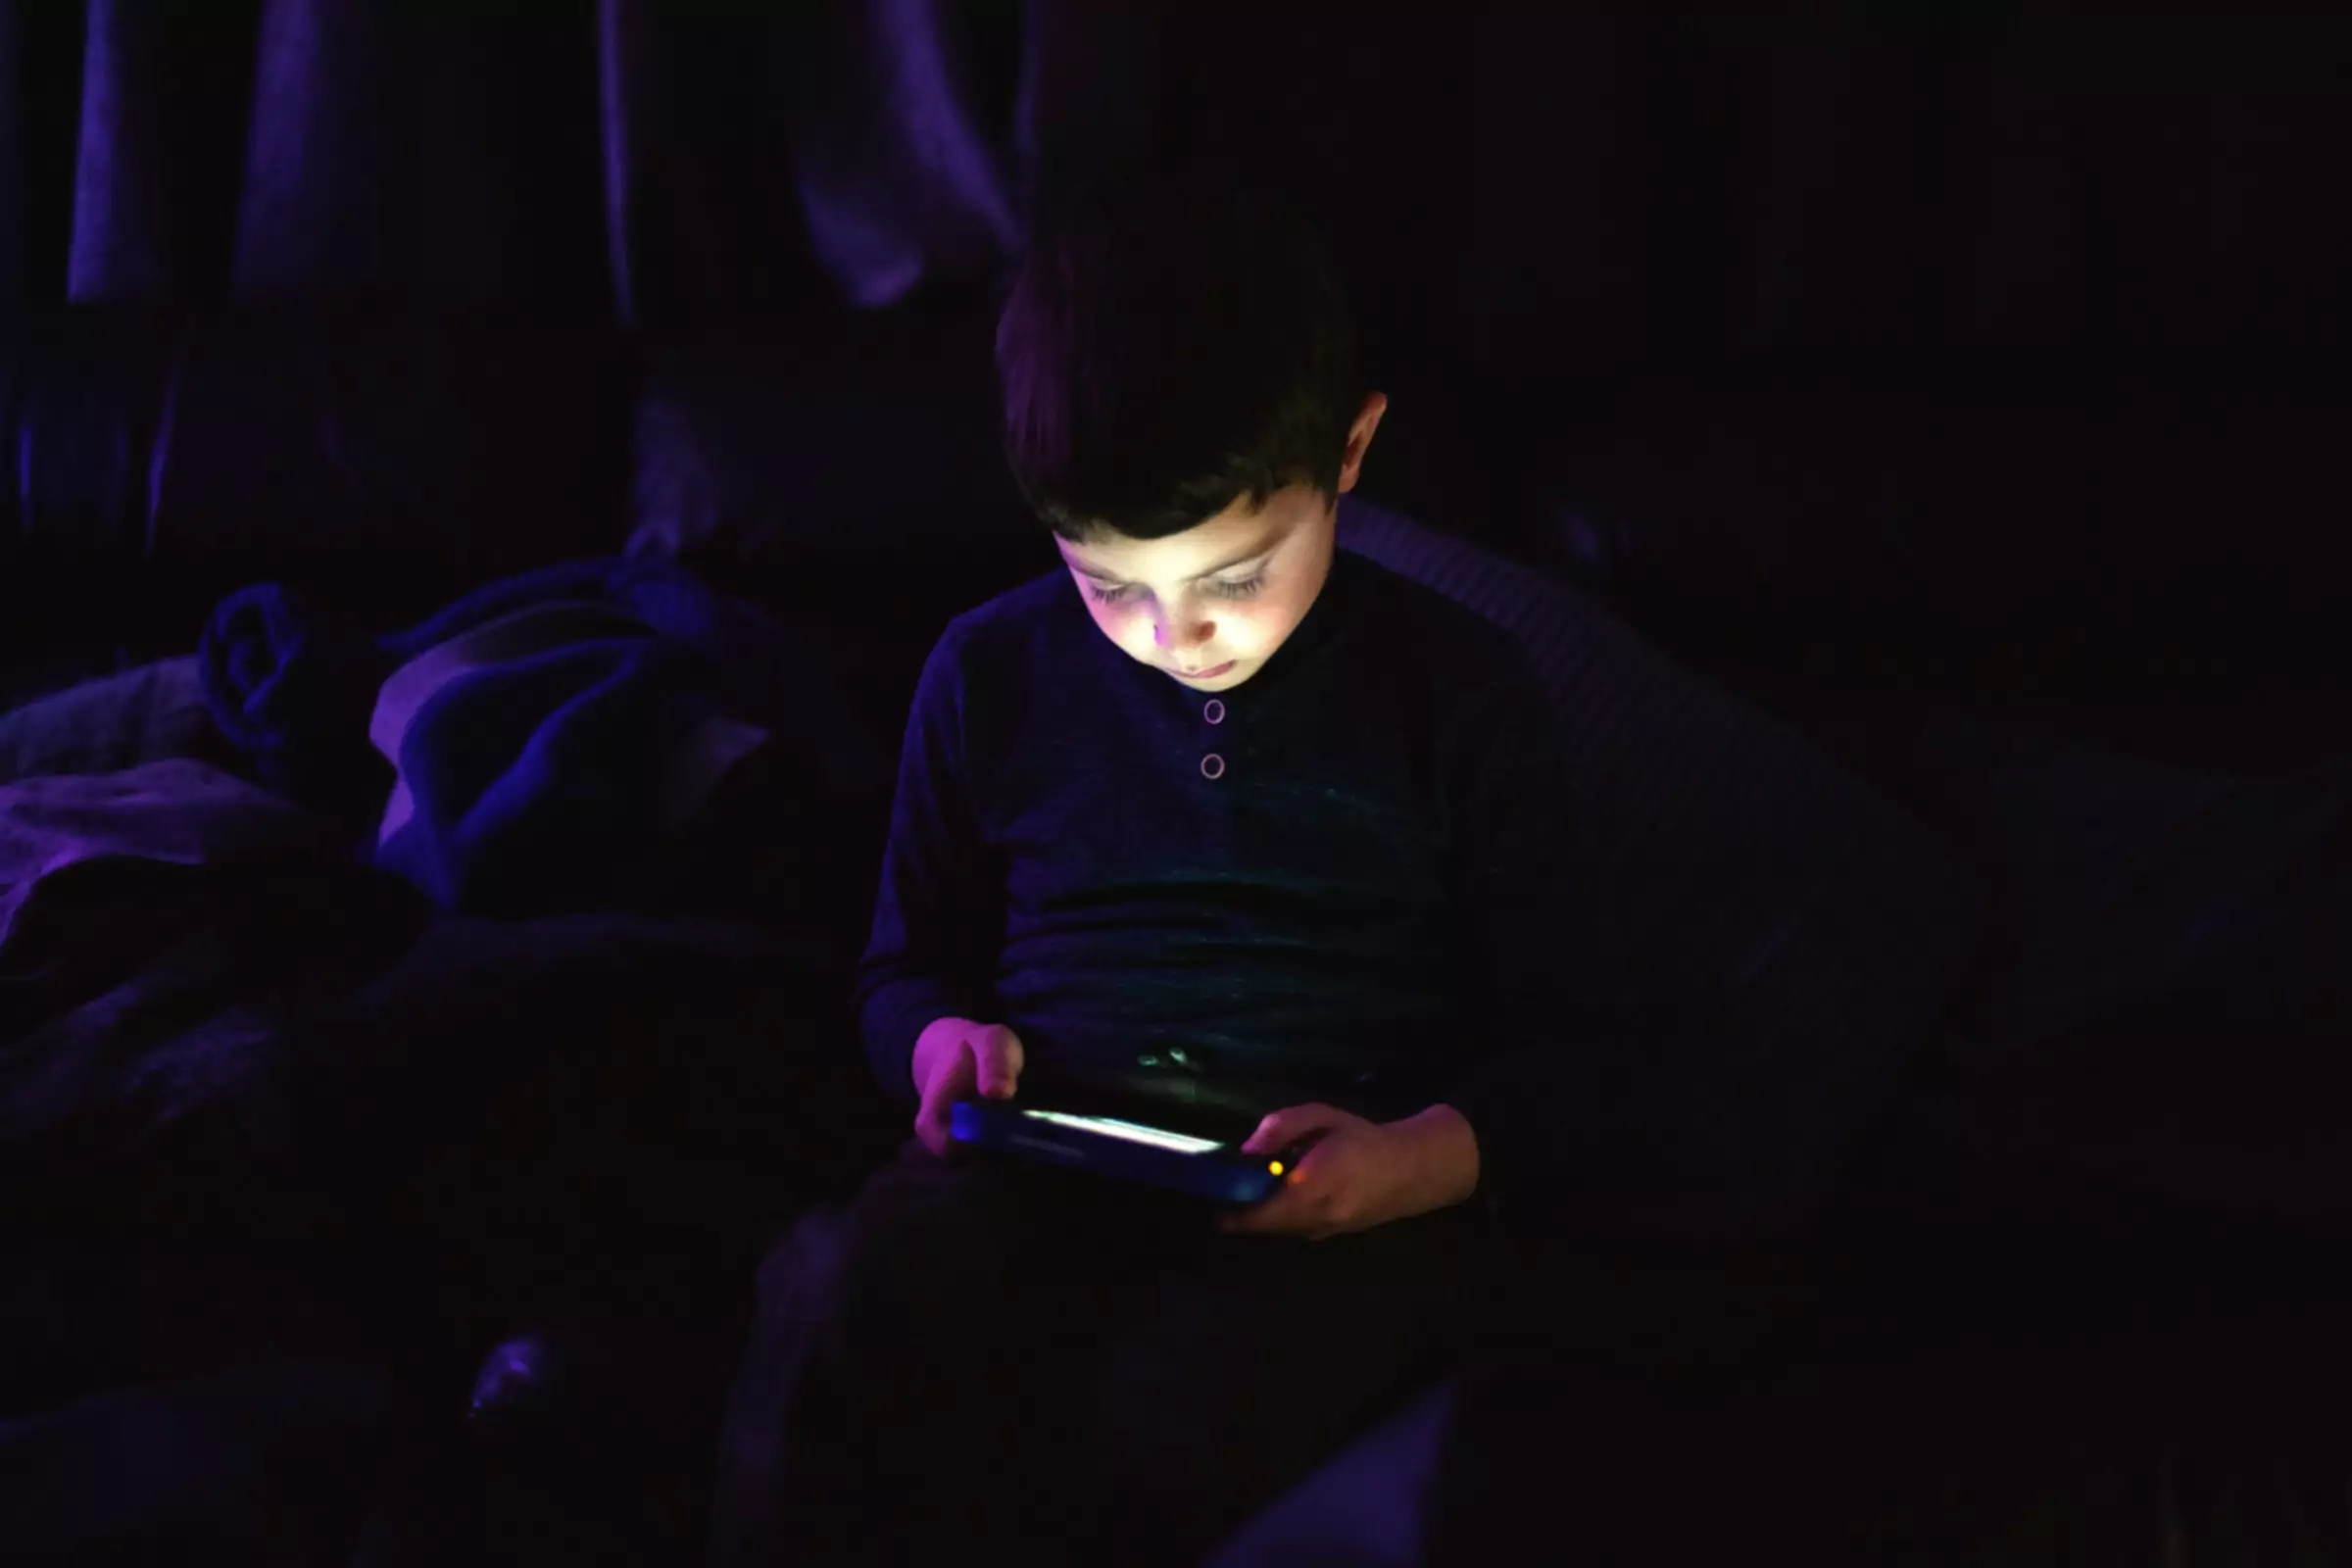 majhen otrok, ki se igra na tabličnem računalniku v temni sobi